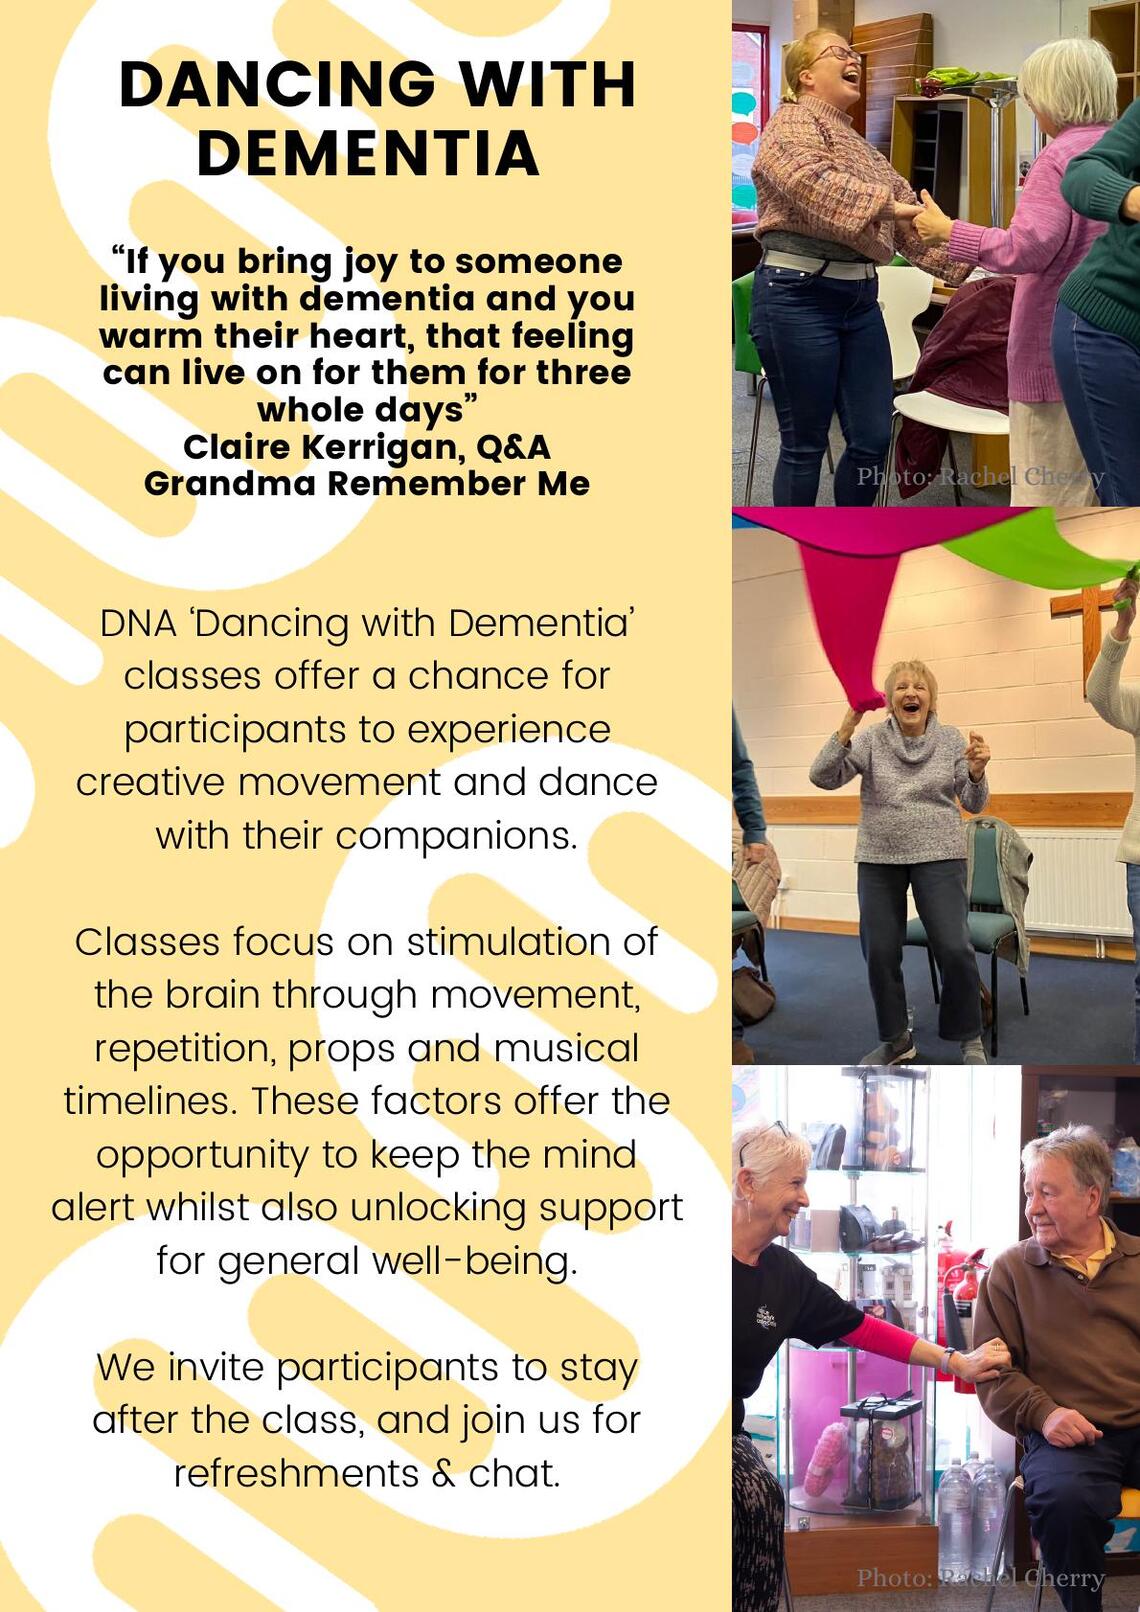 Halstead Dancing with Dementia details